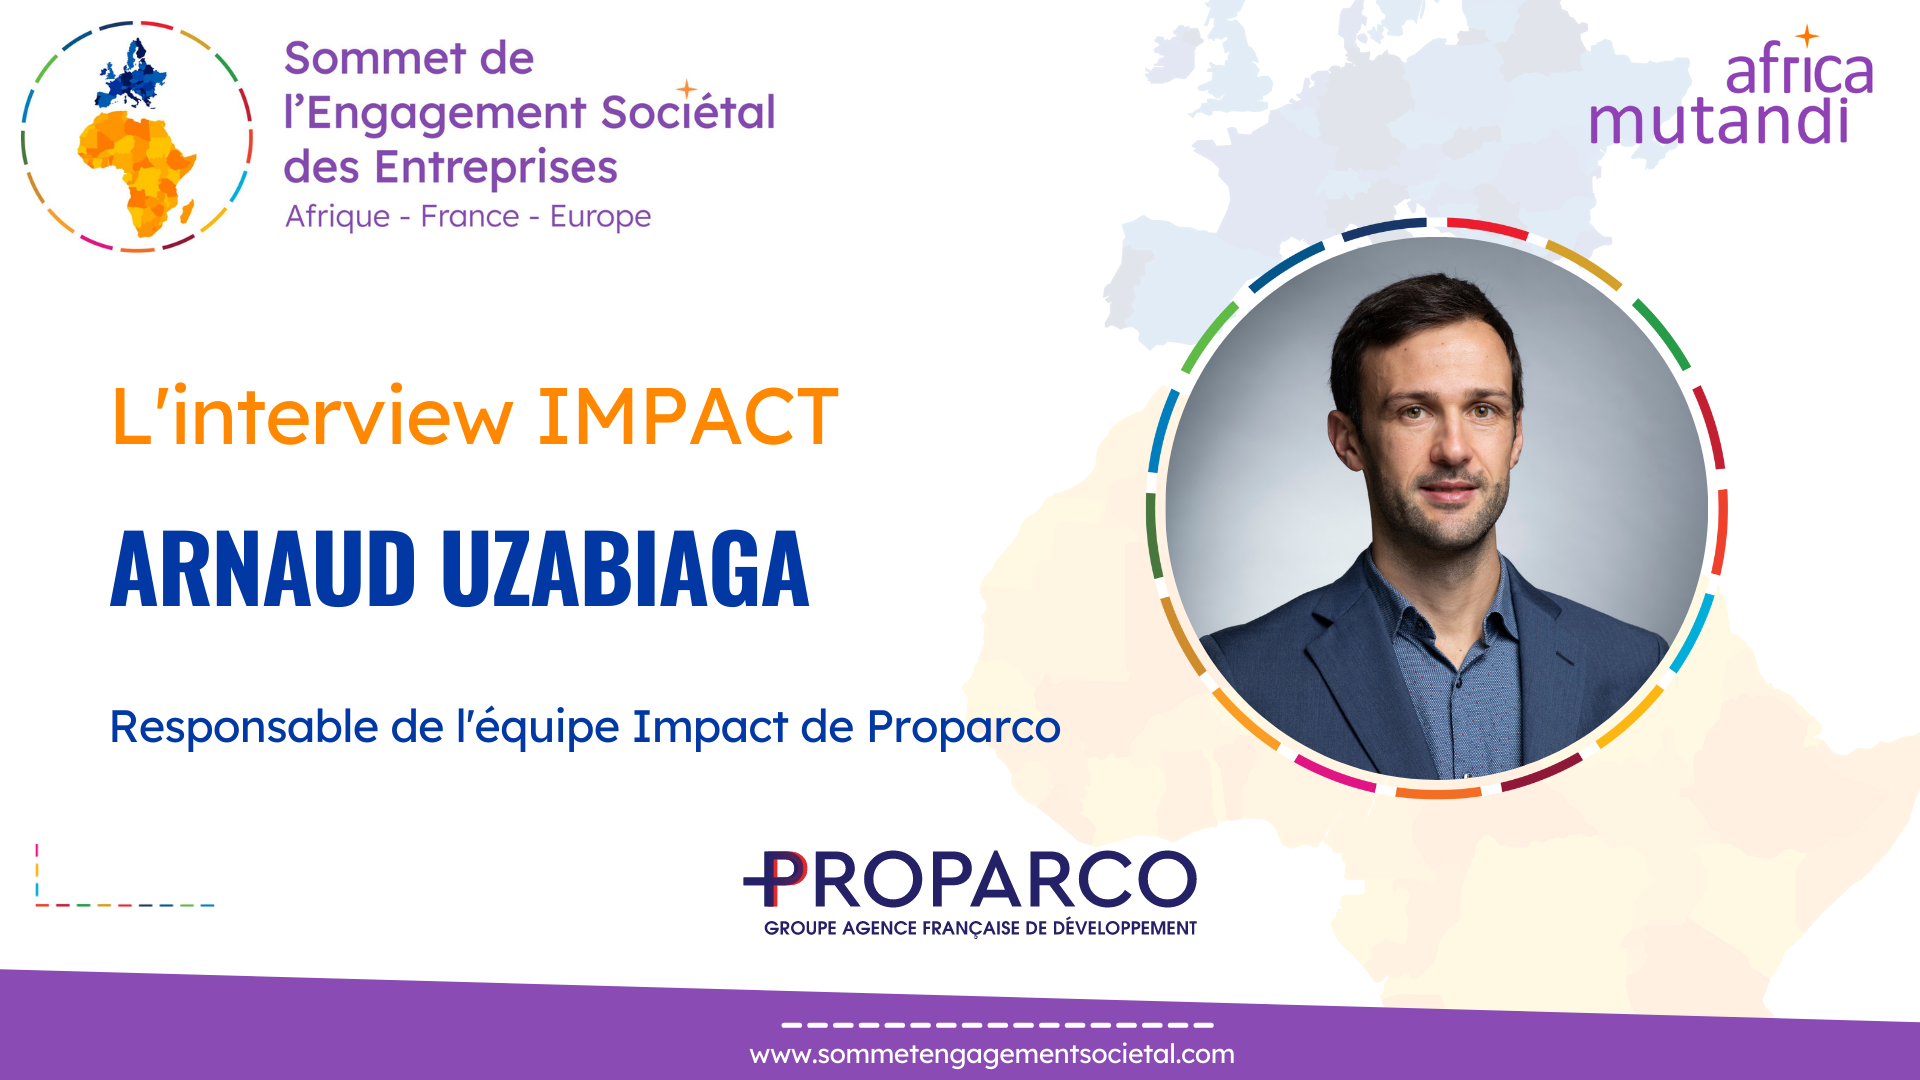 L’interview IMPACT d’Arnaud Uzabiaga, Responsable de l’équipe Impact de Proparco